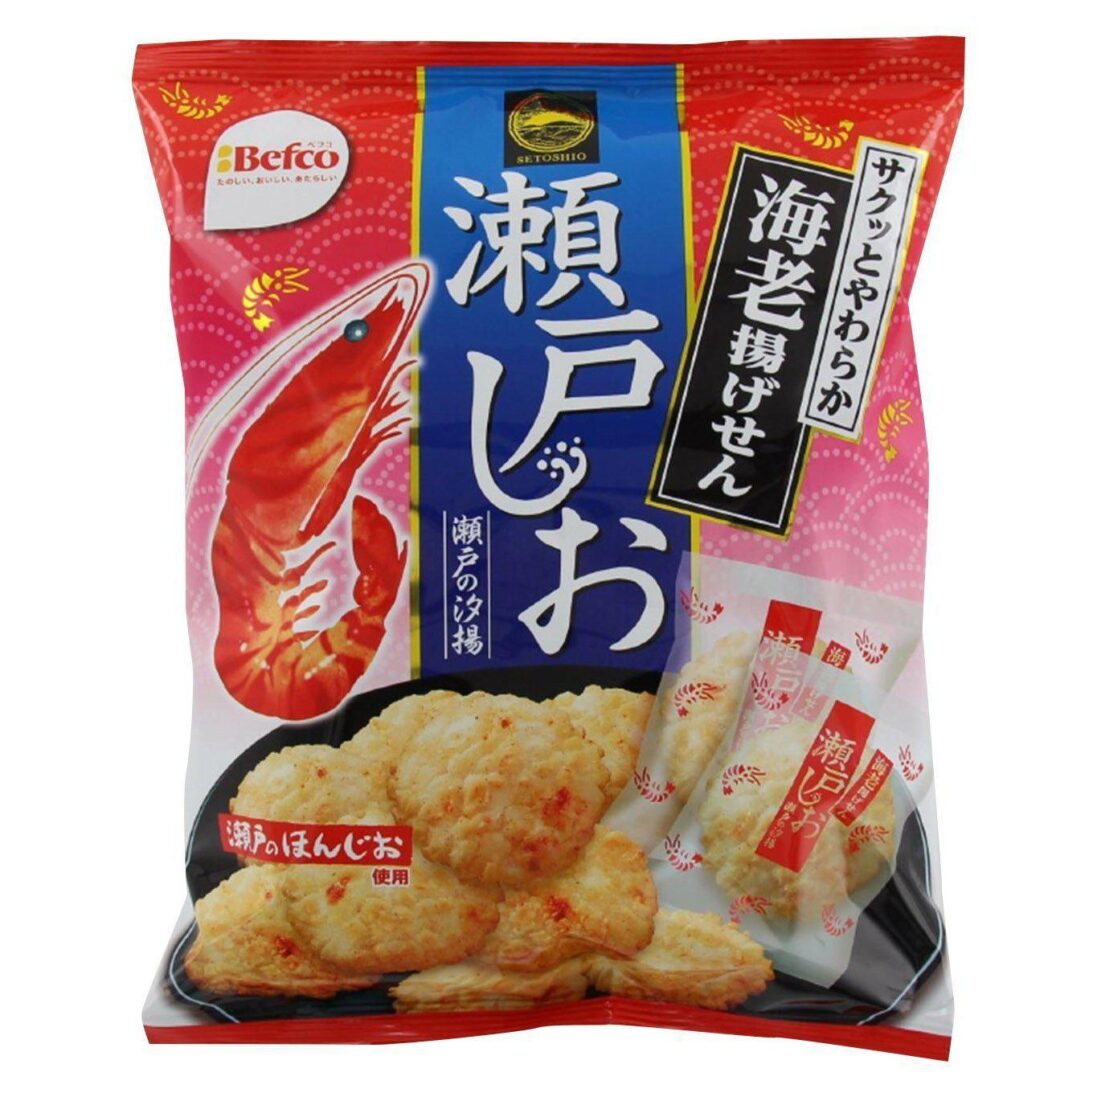 Befco Seto Shio Senbei Rice Crackers Shrimp Flavor 88g